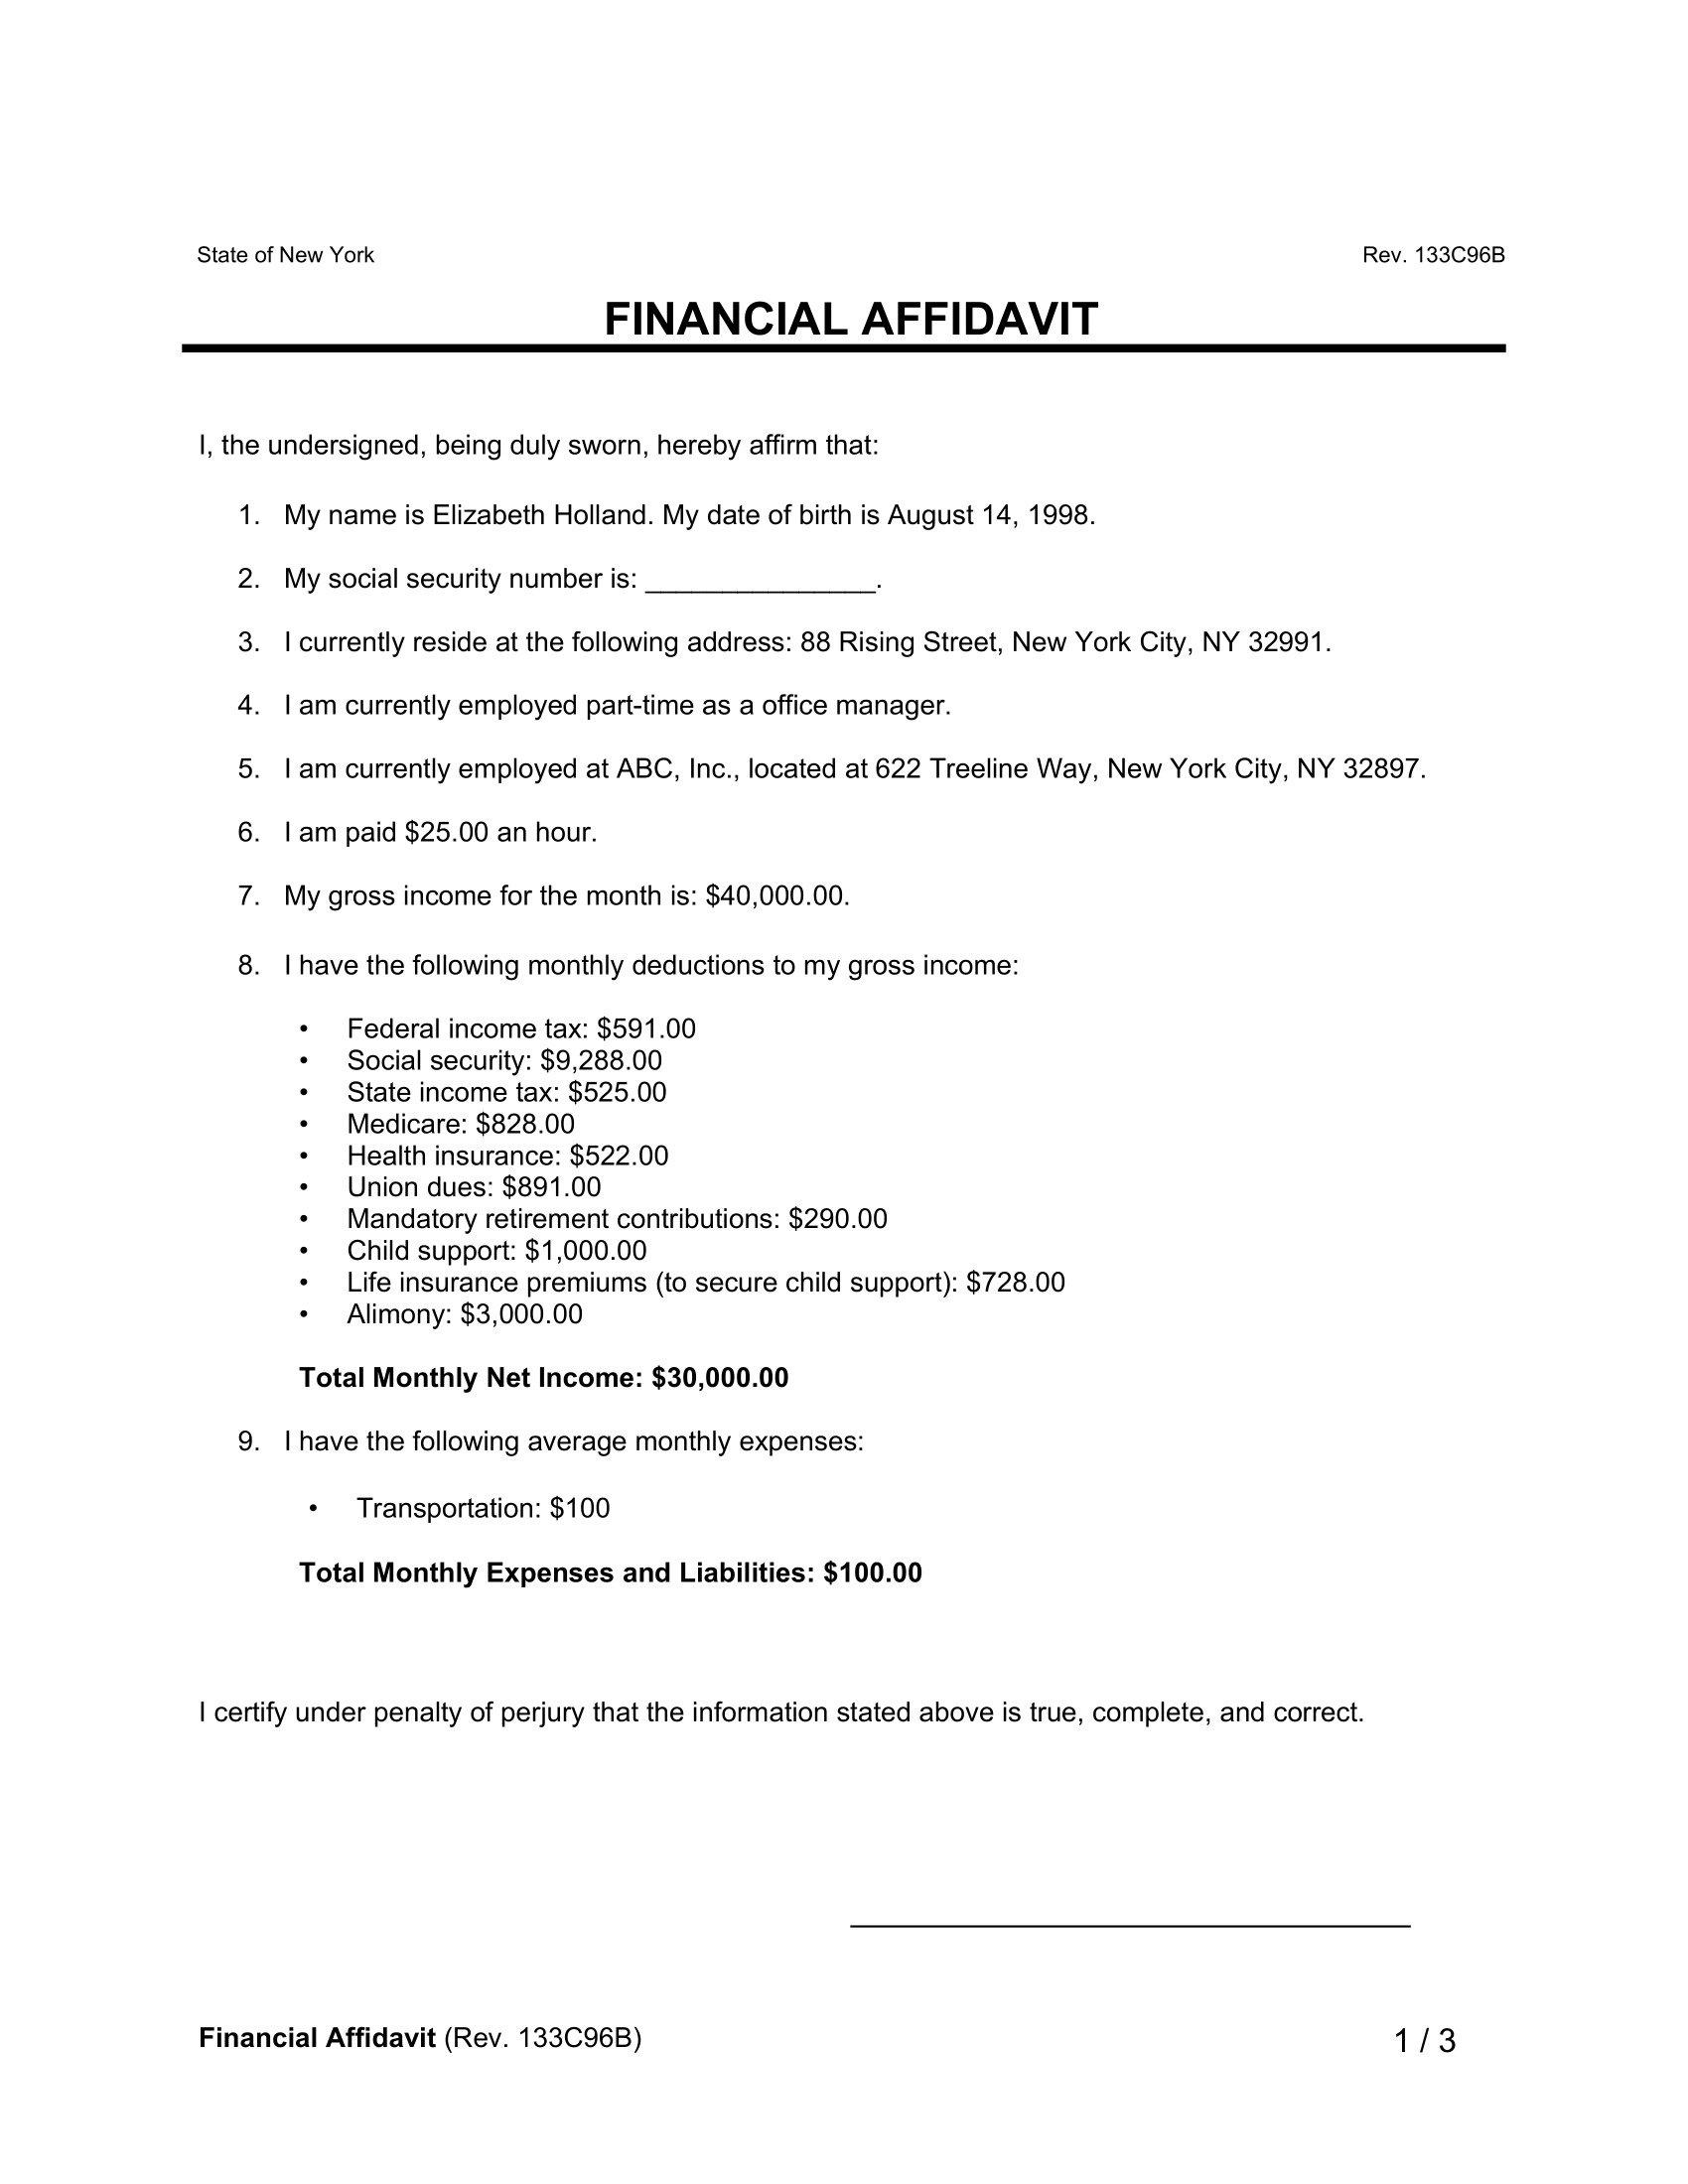 financial affidavit template